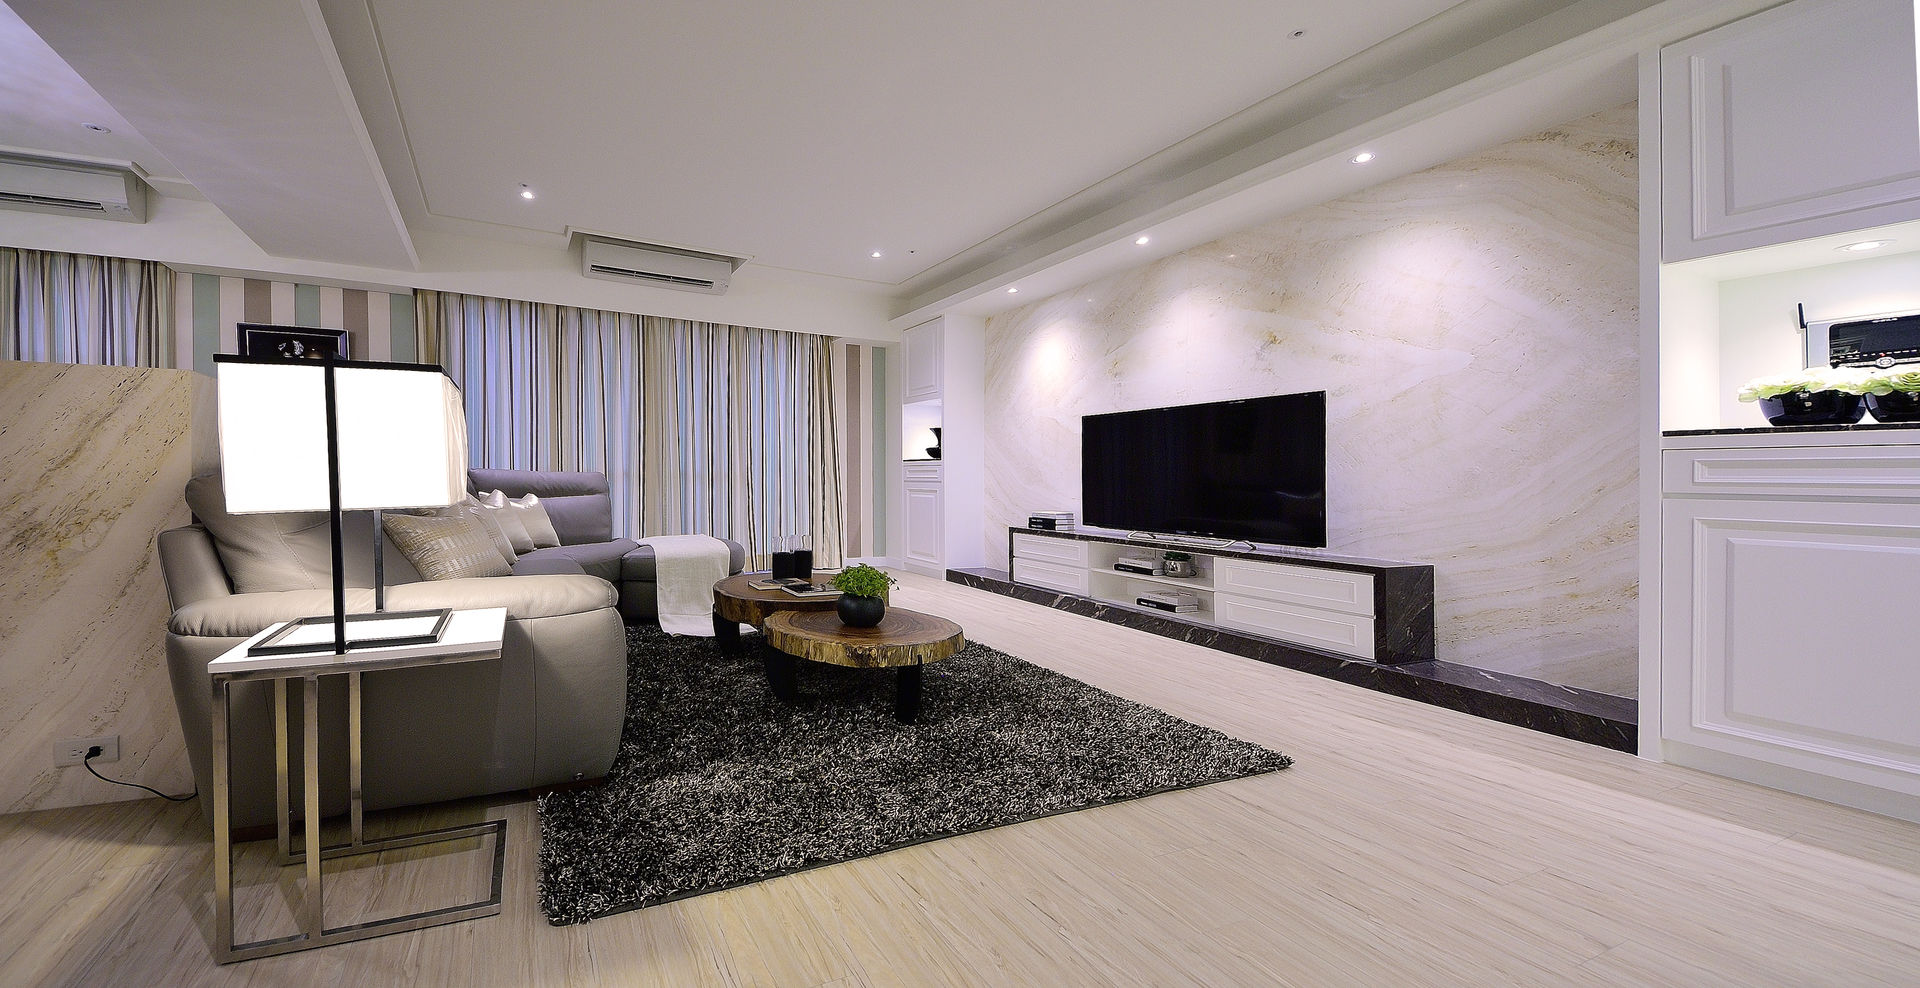 美式風格居家空間, 大觀創境空間設計事務所 大觀創境空間設計事務所 Eclectic style living room